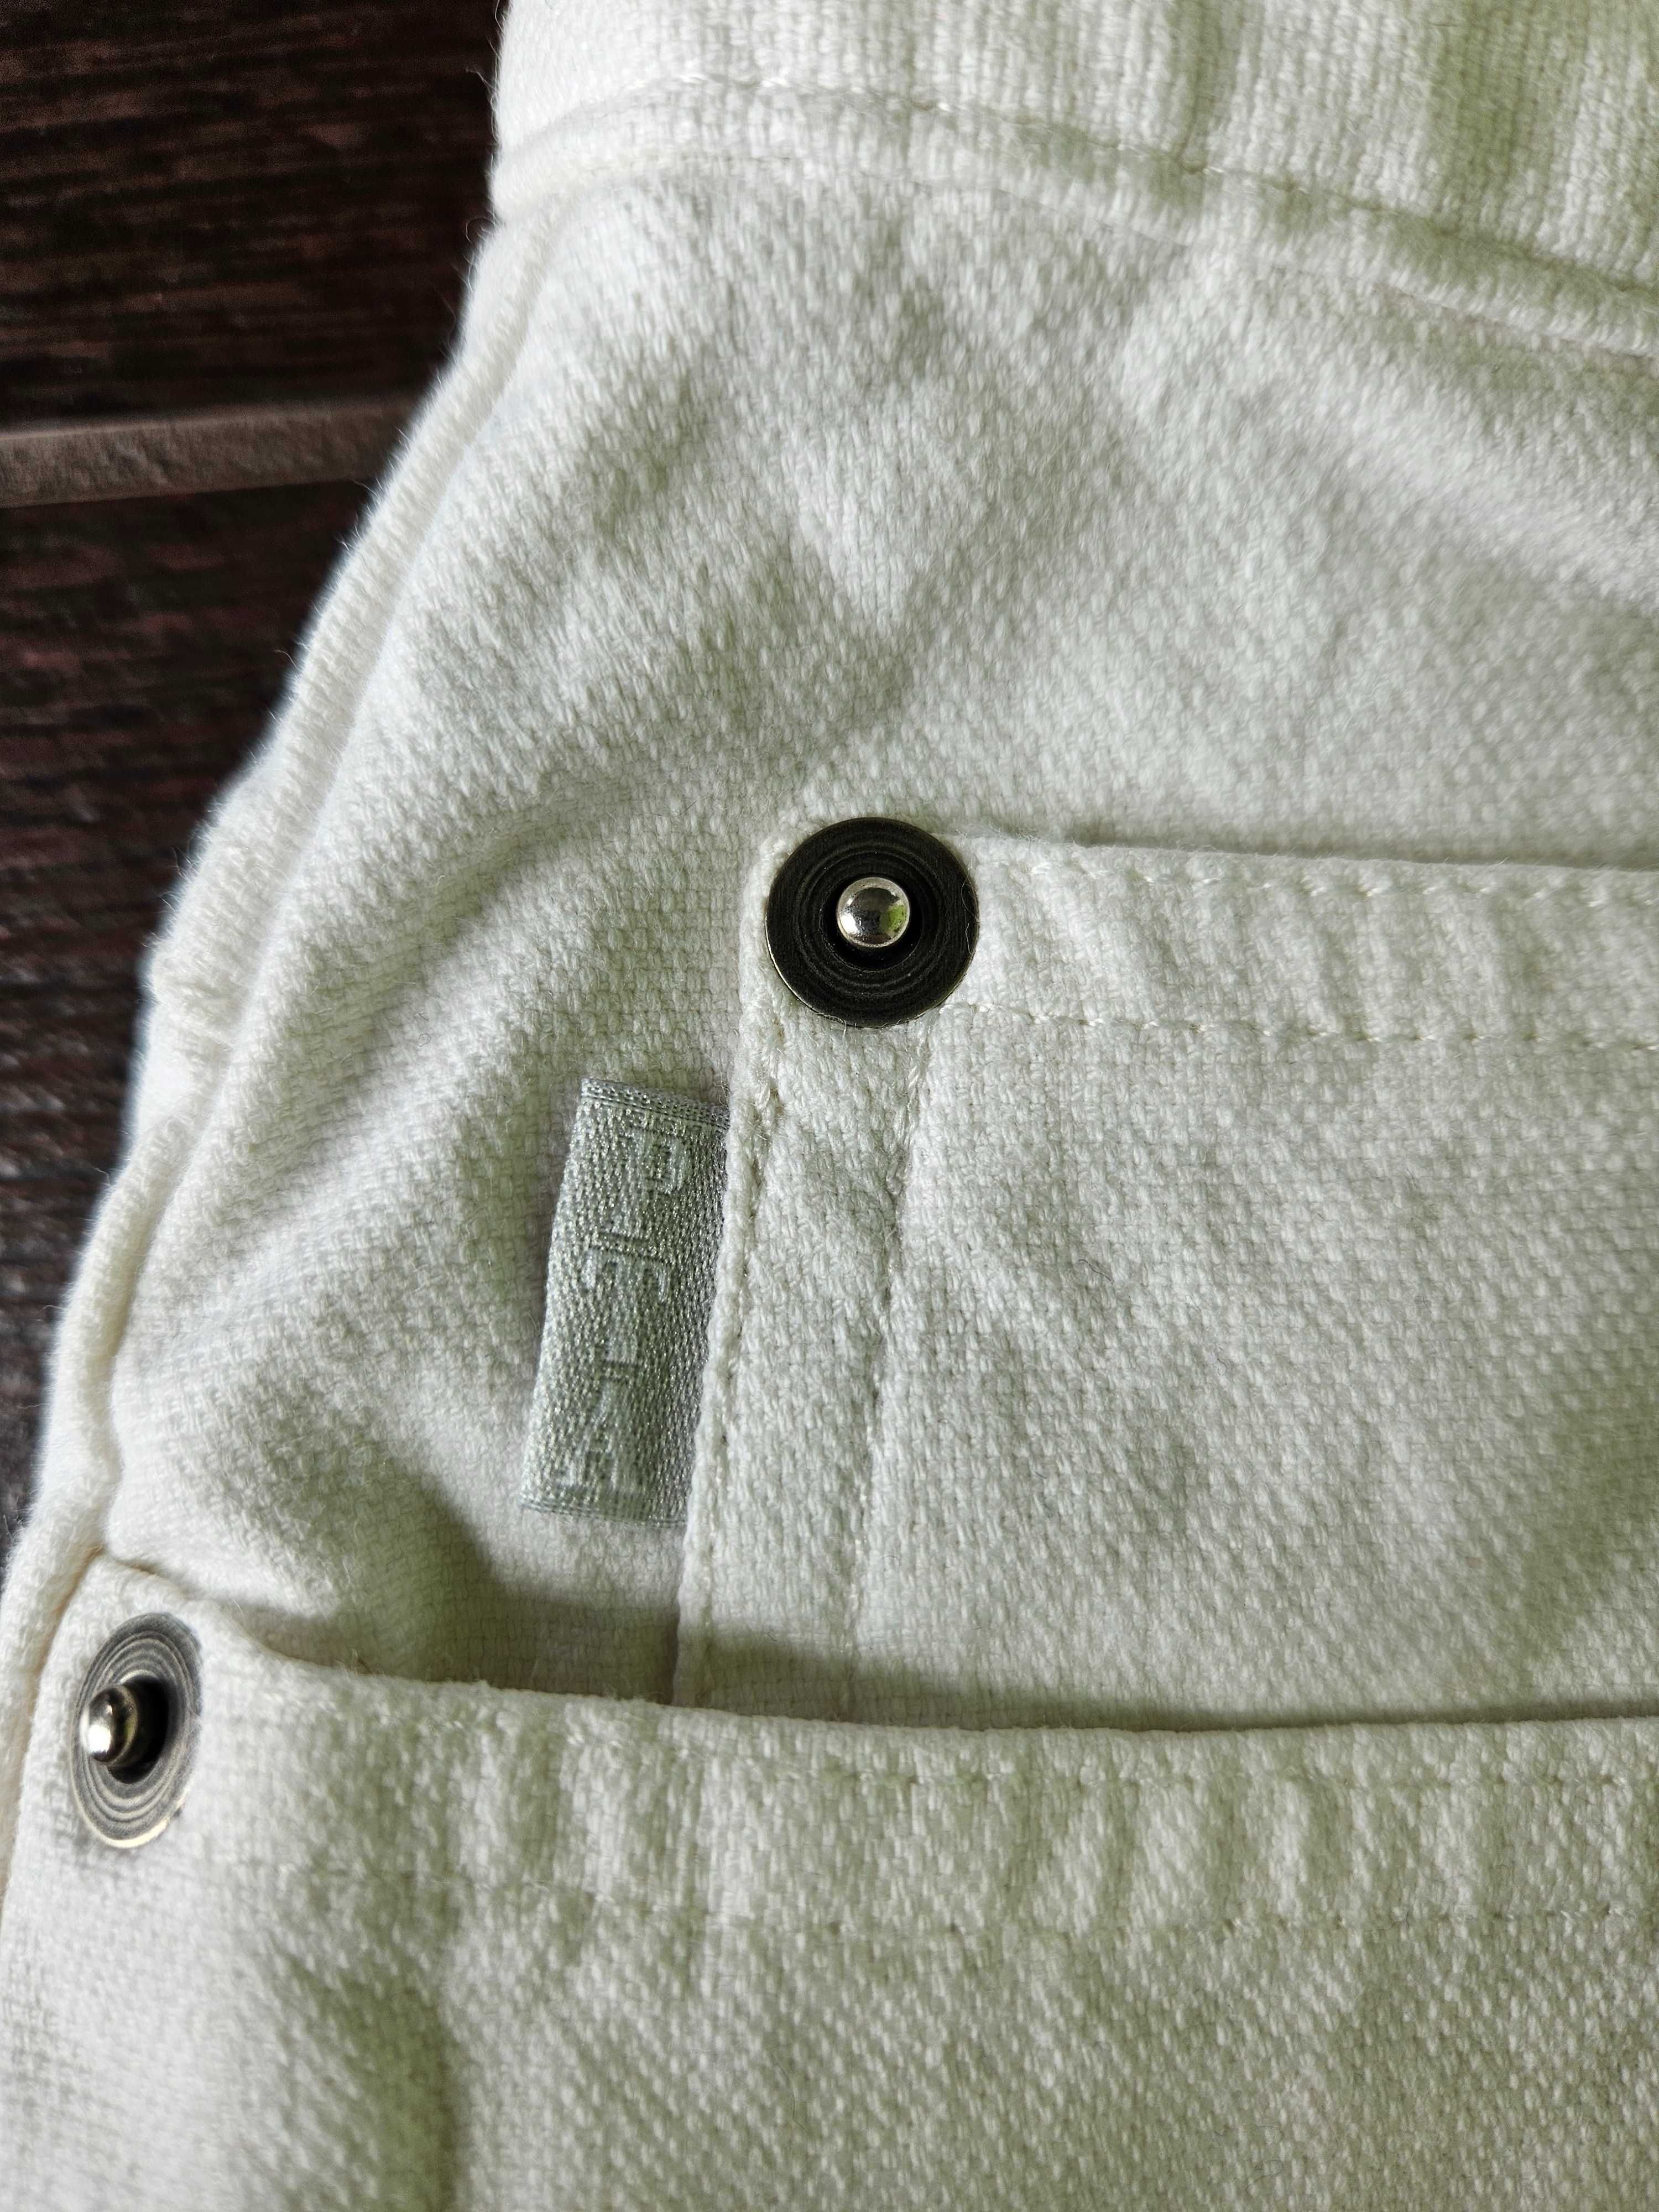 Białe/ecru proste jeansy marki PTA, pas 34, dł. 103cm